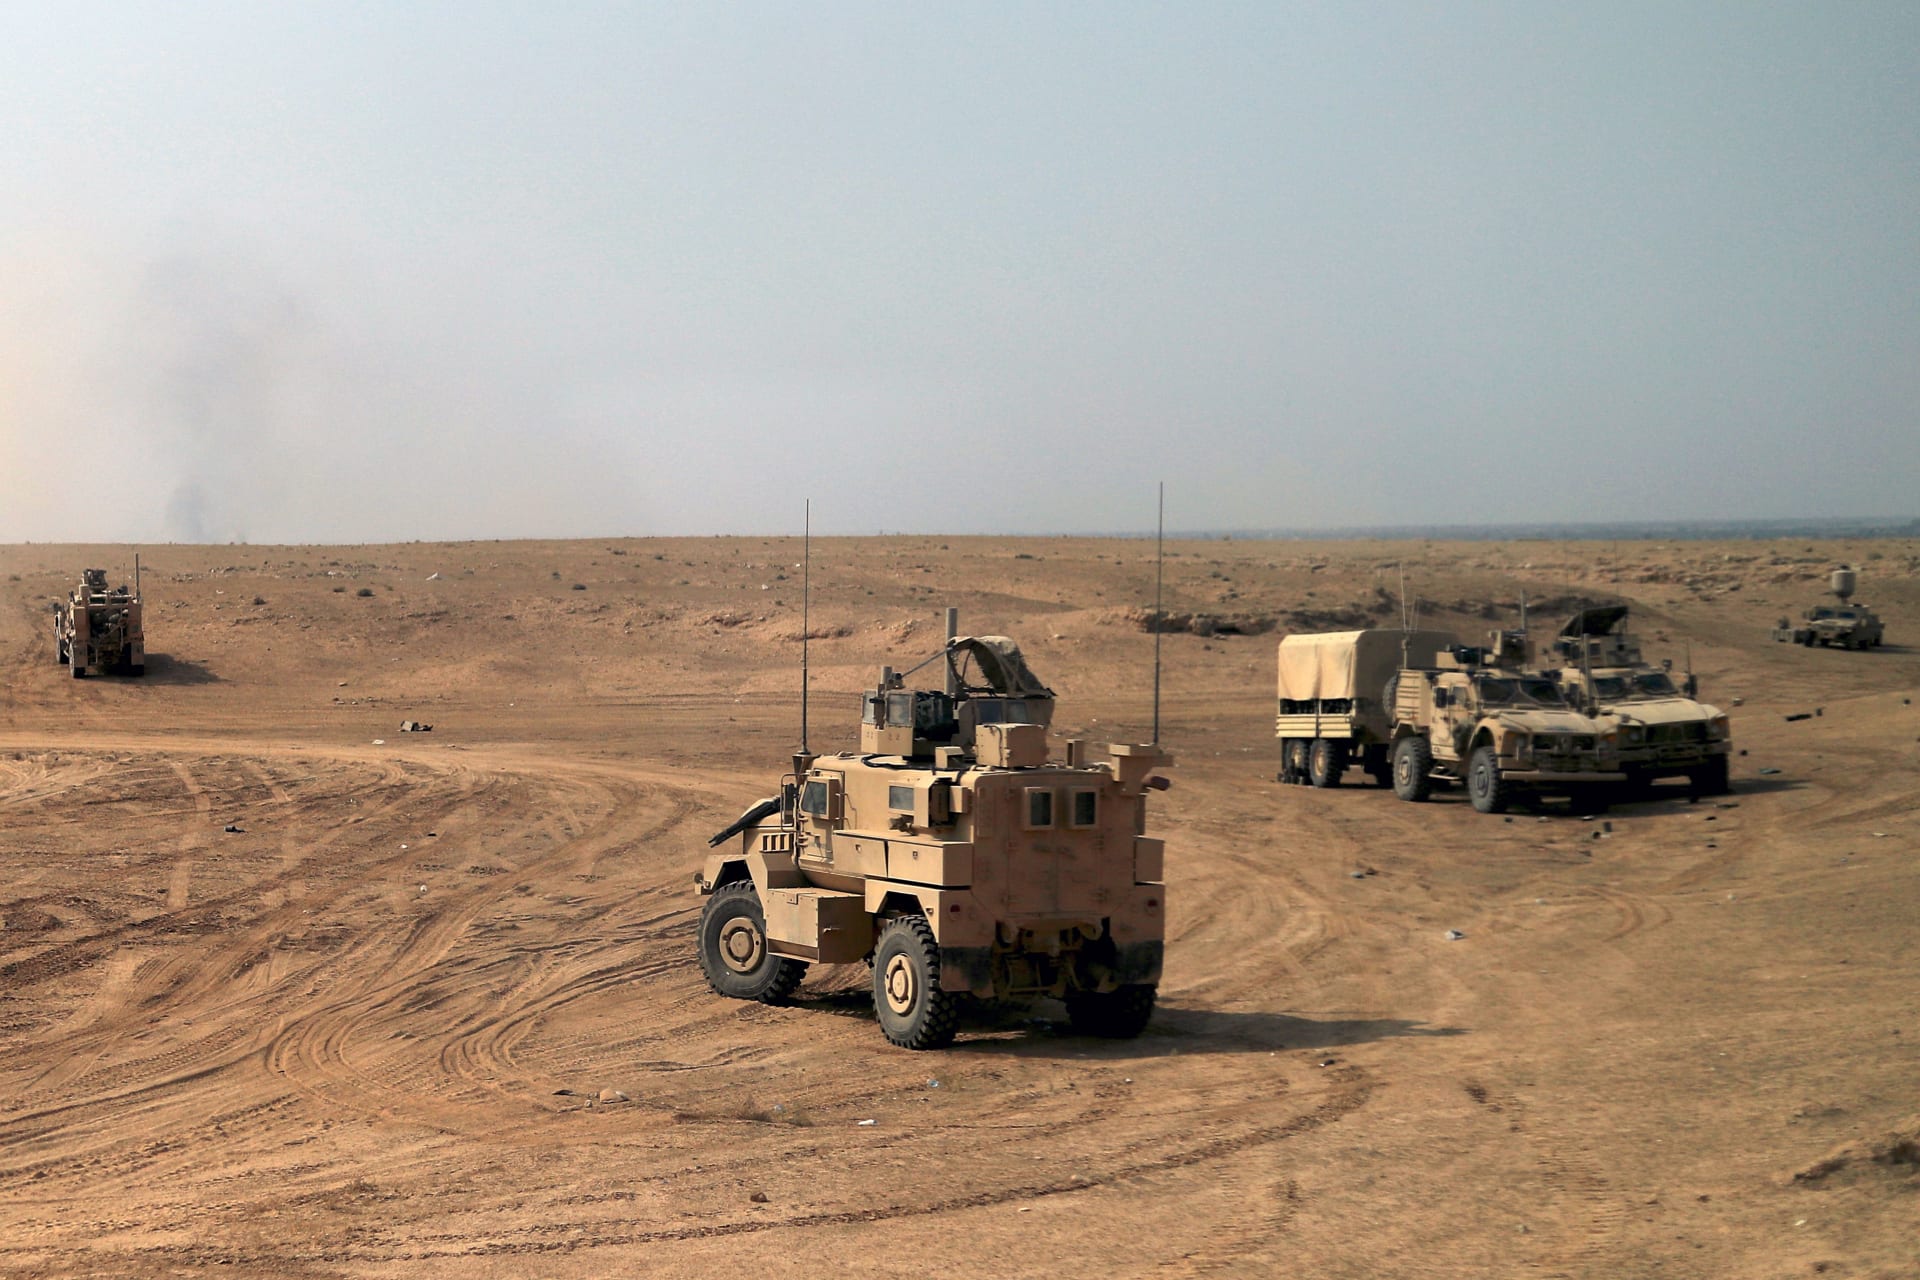 الجنرال ماكنزي: البغدادي يجري هربا في الصحراء للنجاة بحياته